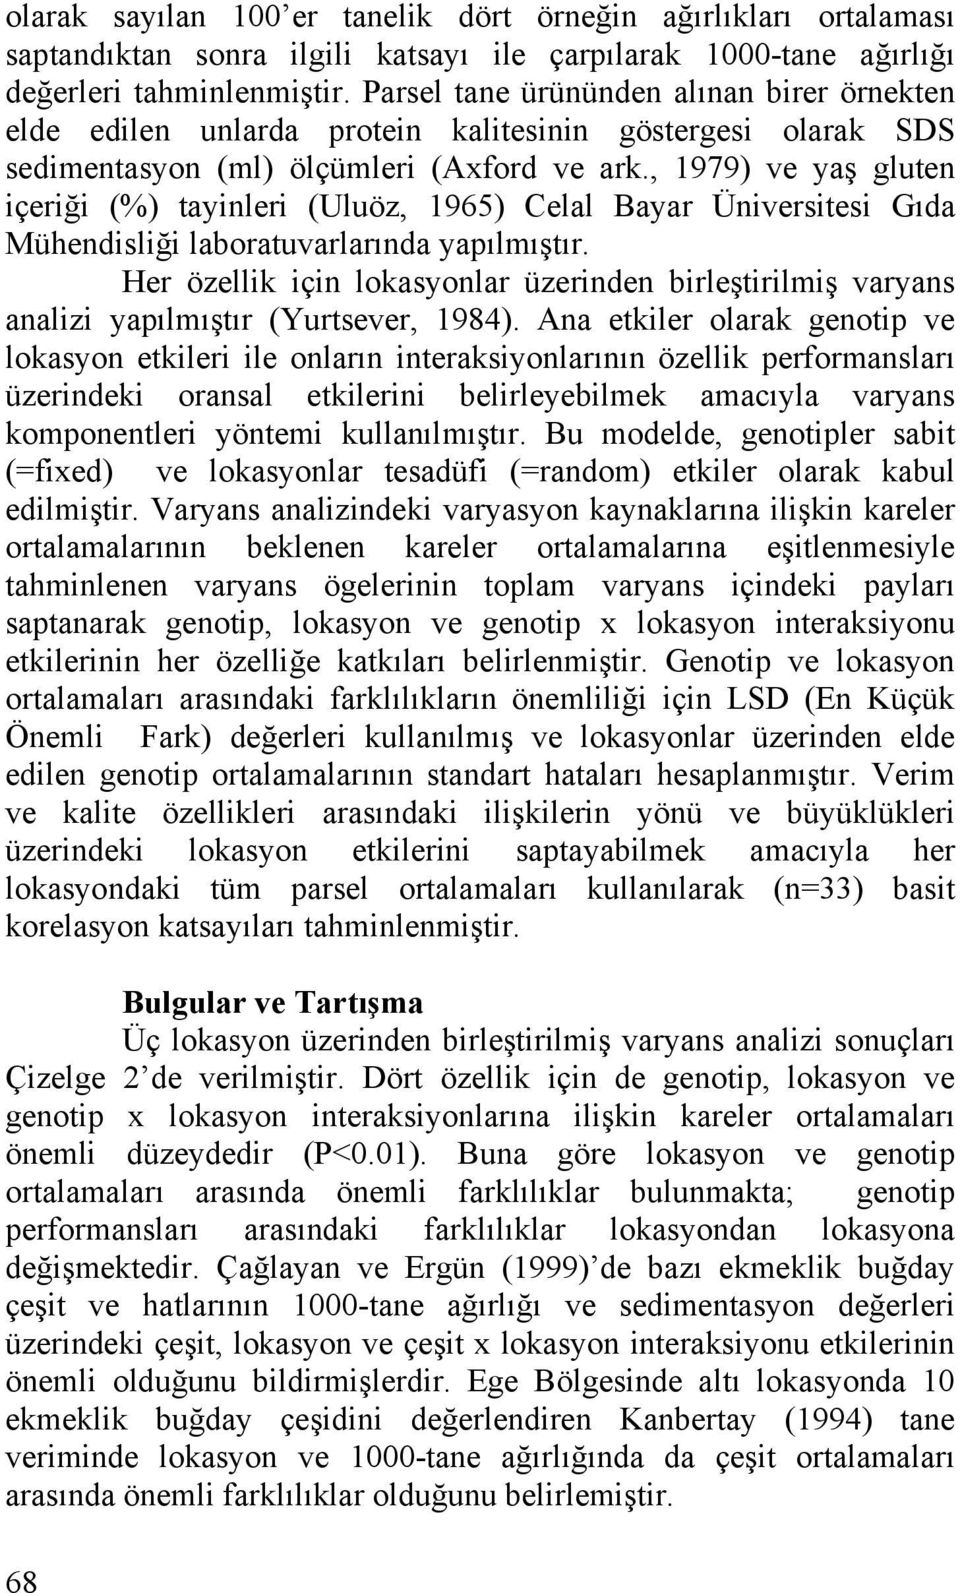 , 1979) ve yaş gluten içeriği (%) tayinleri (Uluöz, 1965) Celal Bayar Üniversitesi Gıda Mühendisliği laboratuvarlarında yapılmıştır.